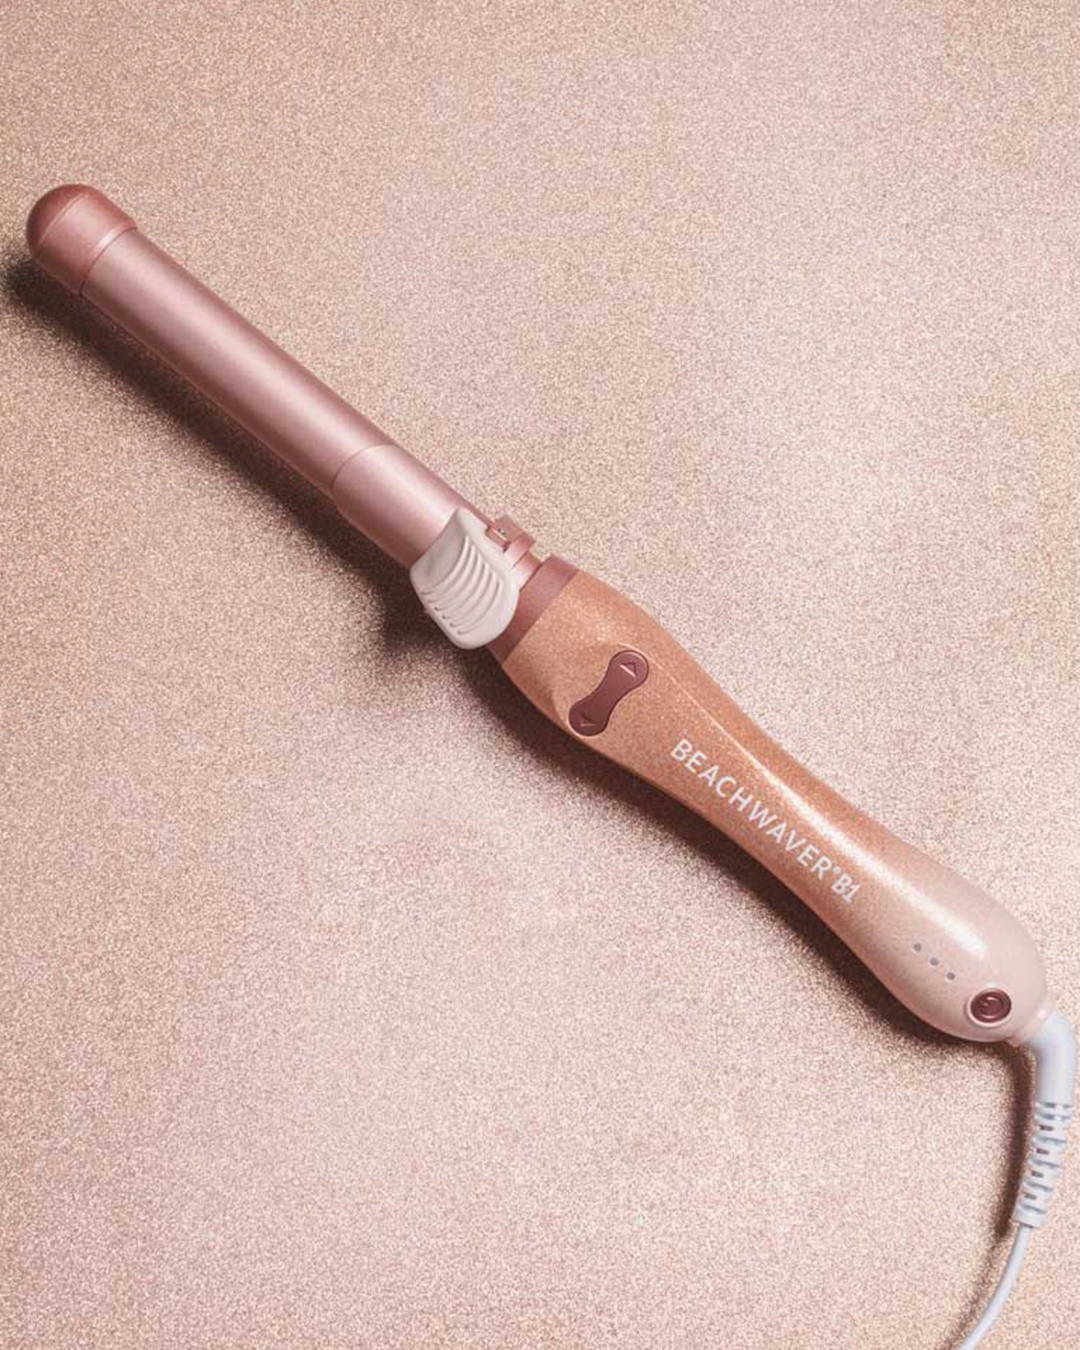 Image of pink b1 Beachwaver hair curler